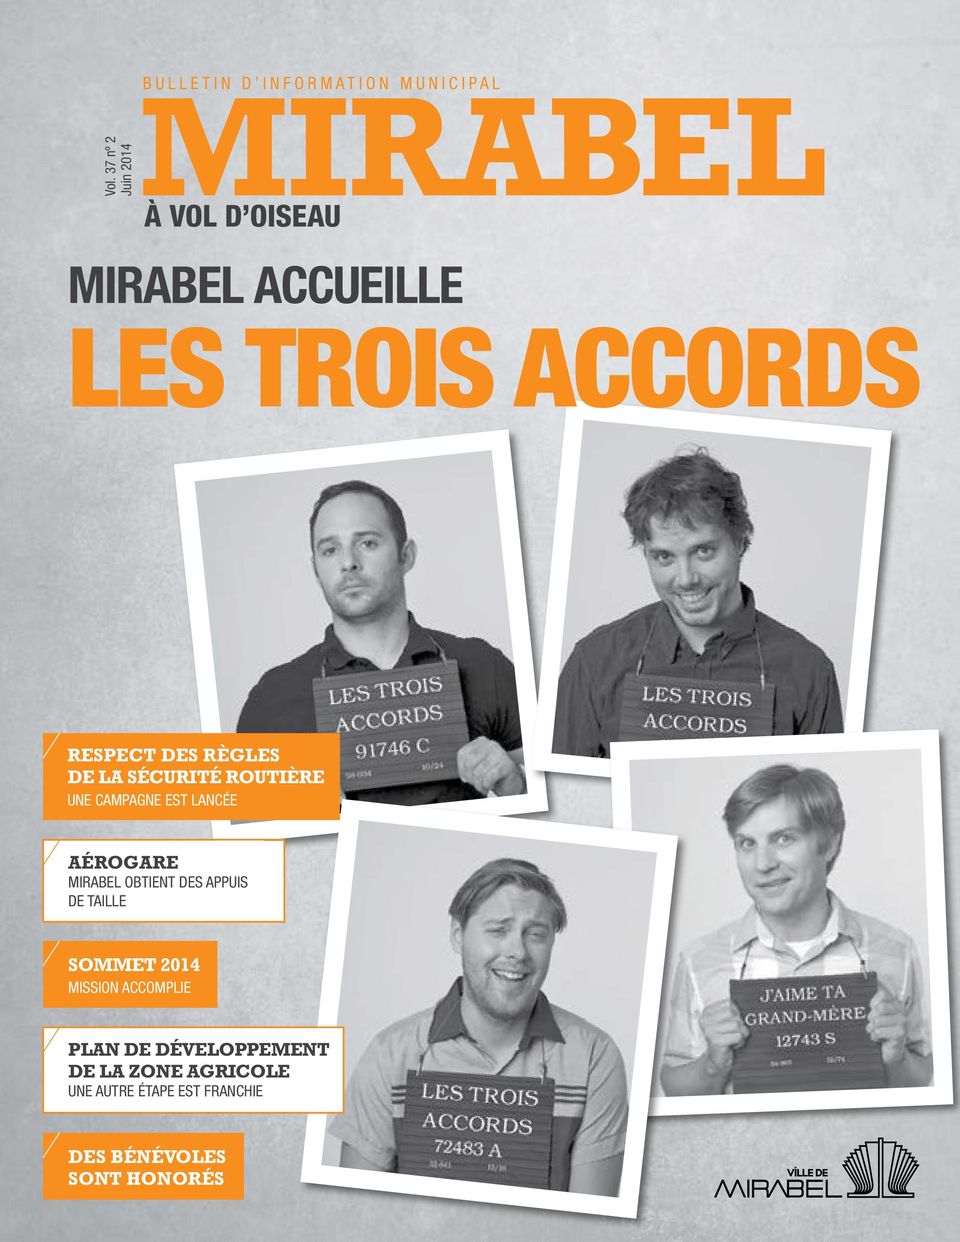 LANCÉE Aérogare MIRABEL OBTIENT DES APPUIS DE TAILLE Sommet 2014 MISSION ACCOMPLIE Plan